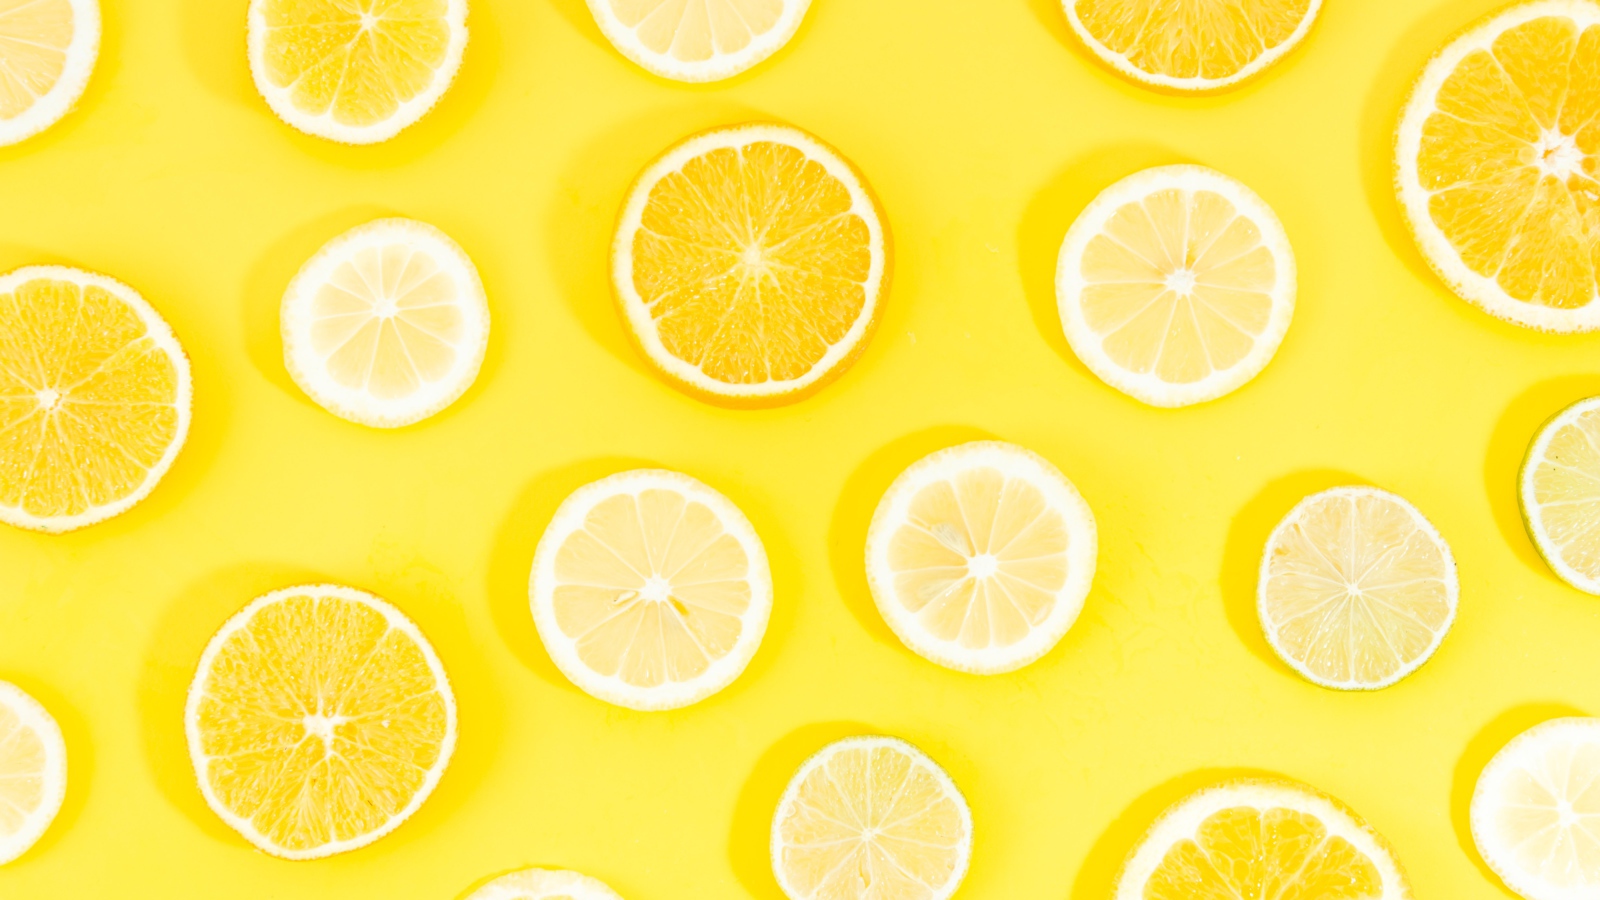 Orange and lemon circles on yellow background